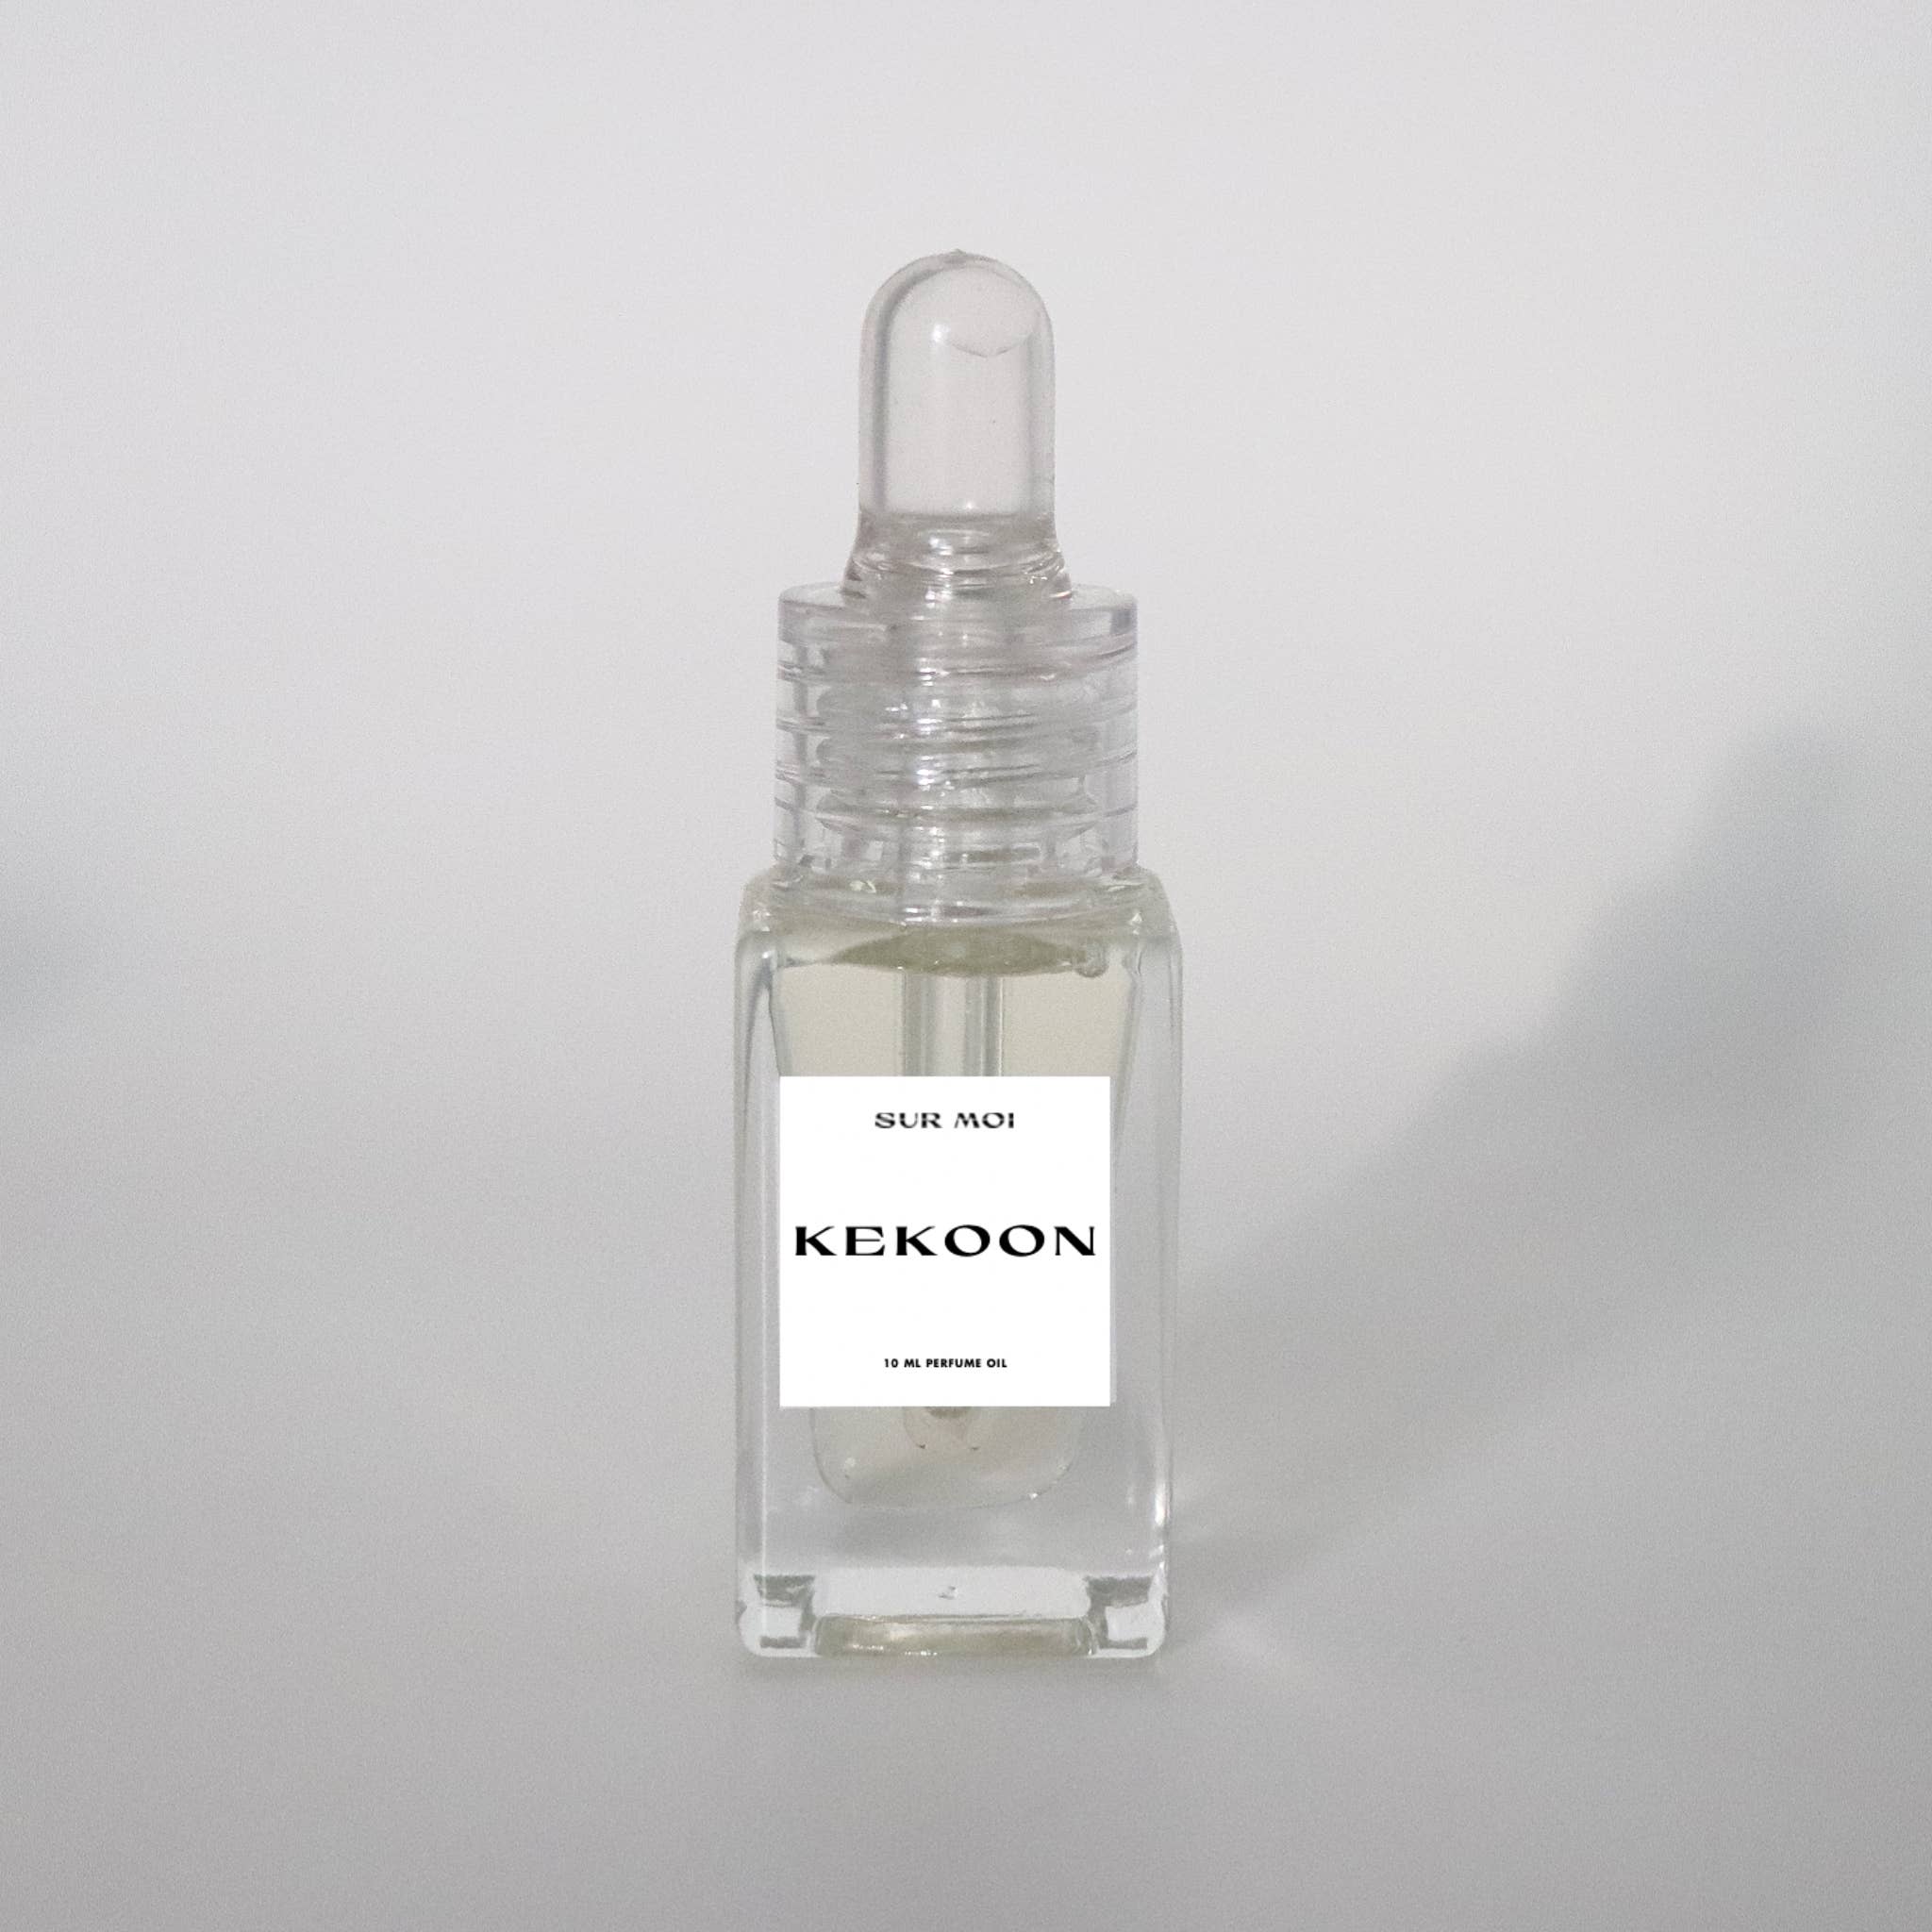 Nag Champ Perfume Oil - Natural Family Botanicals Skincare for